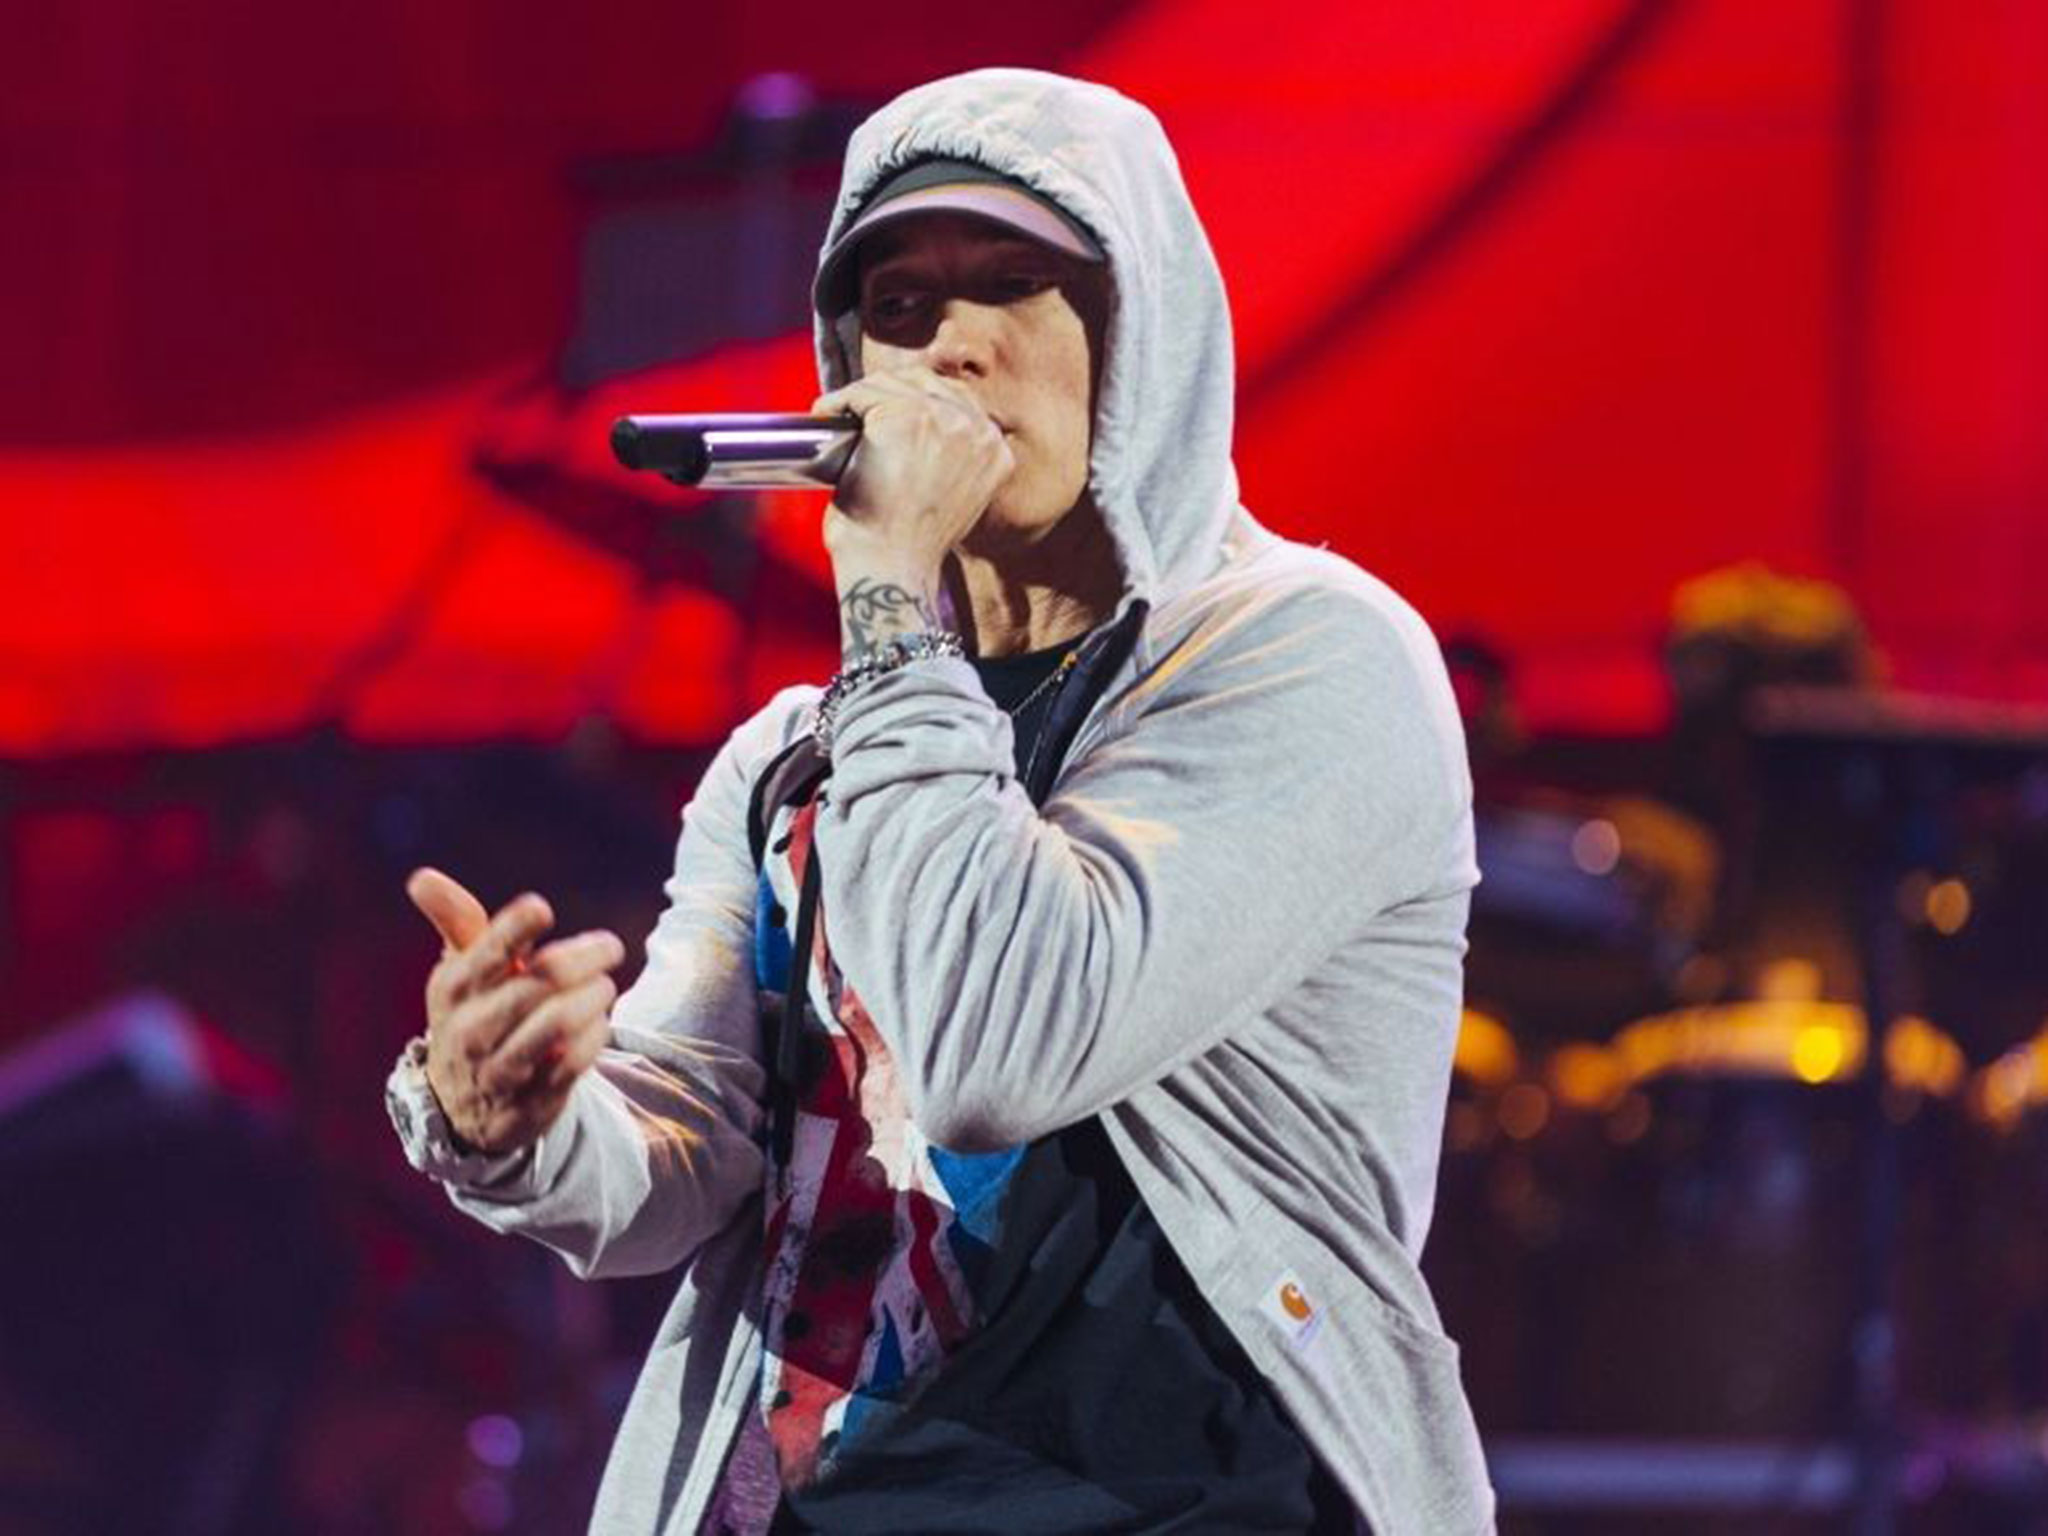 Eminem Singer Wallpaper | PixelsTalk.Net2048 x 1536